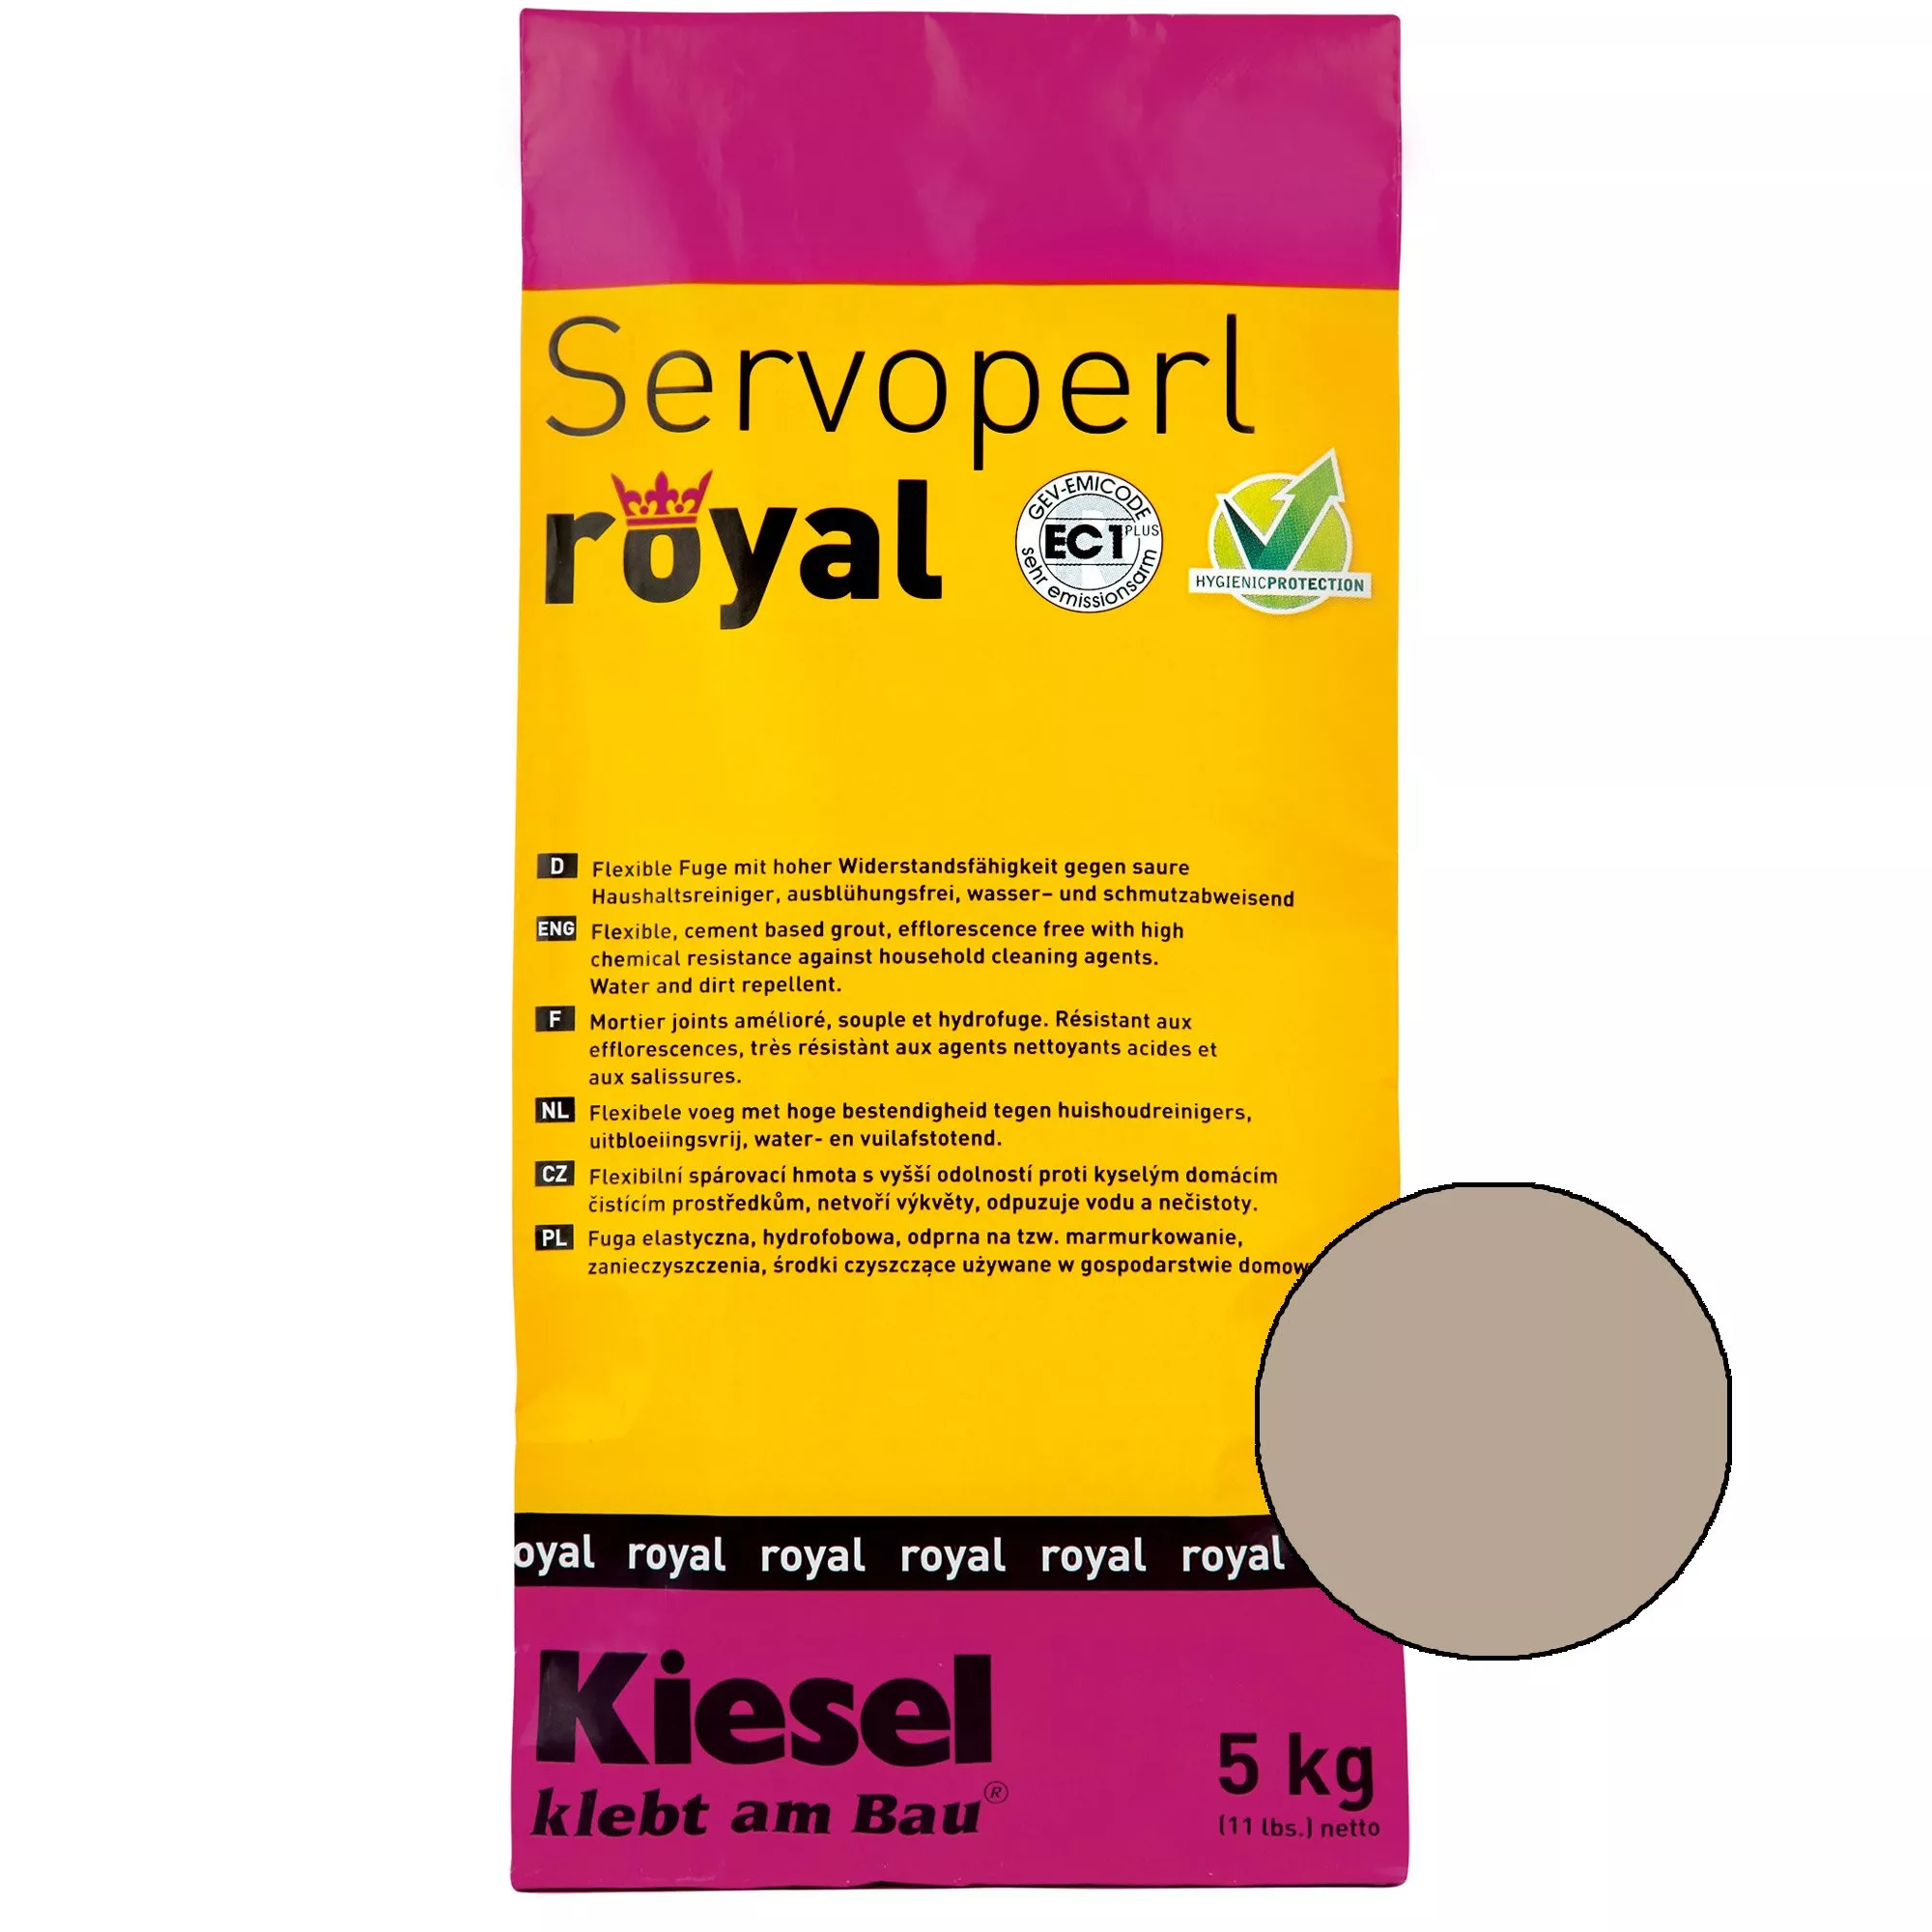 Kiesel Servoperl royal - Flexible, wasser- und schmutzabweisende Fuge (5KG Mochacino)